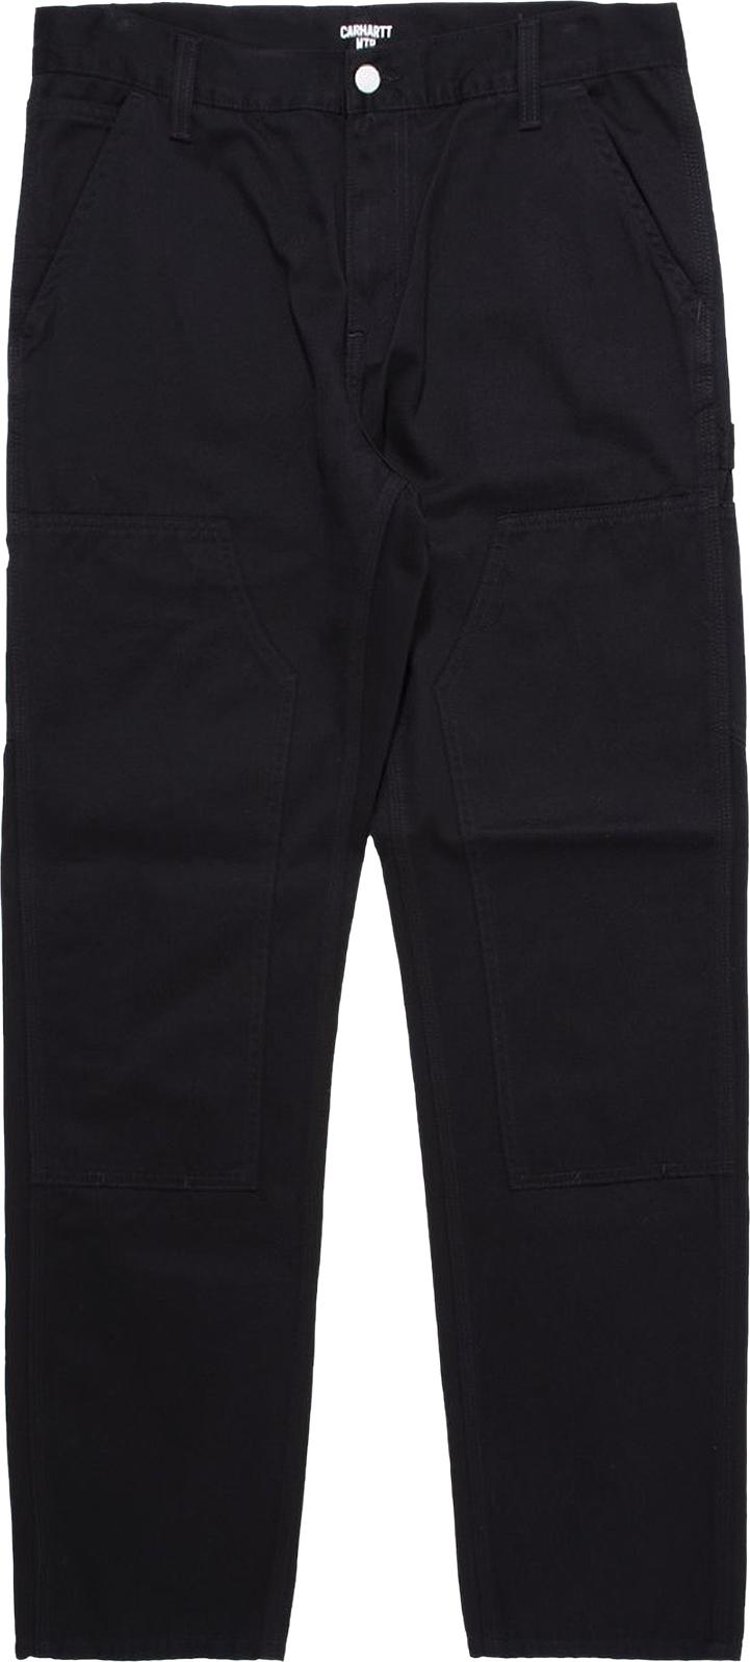 Carhartt Pants – Double Knee Black, Men